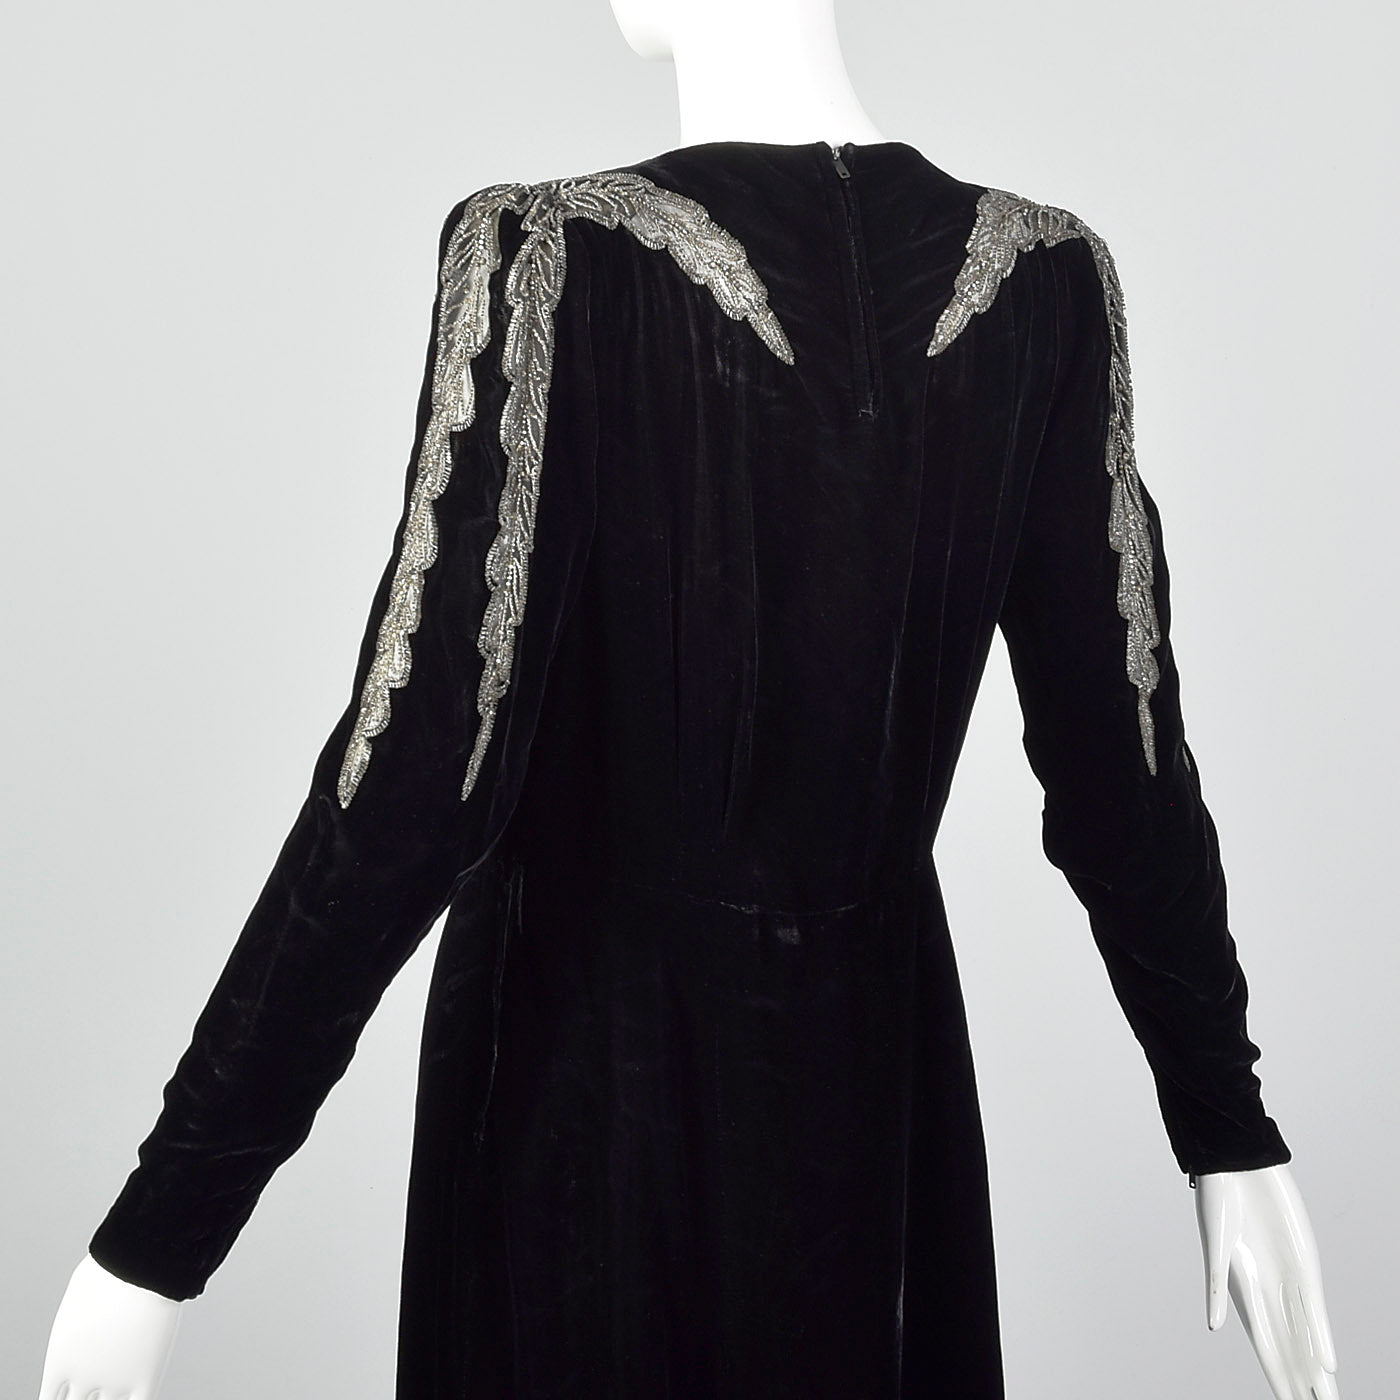 1940s Black Velvet Dress with Sheer Sleeve Design